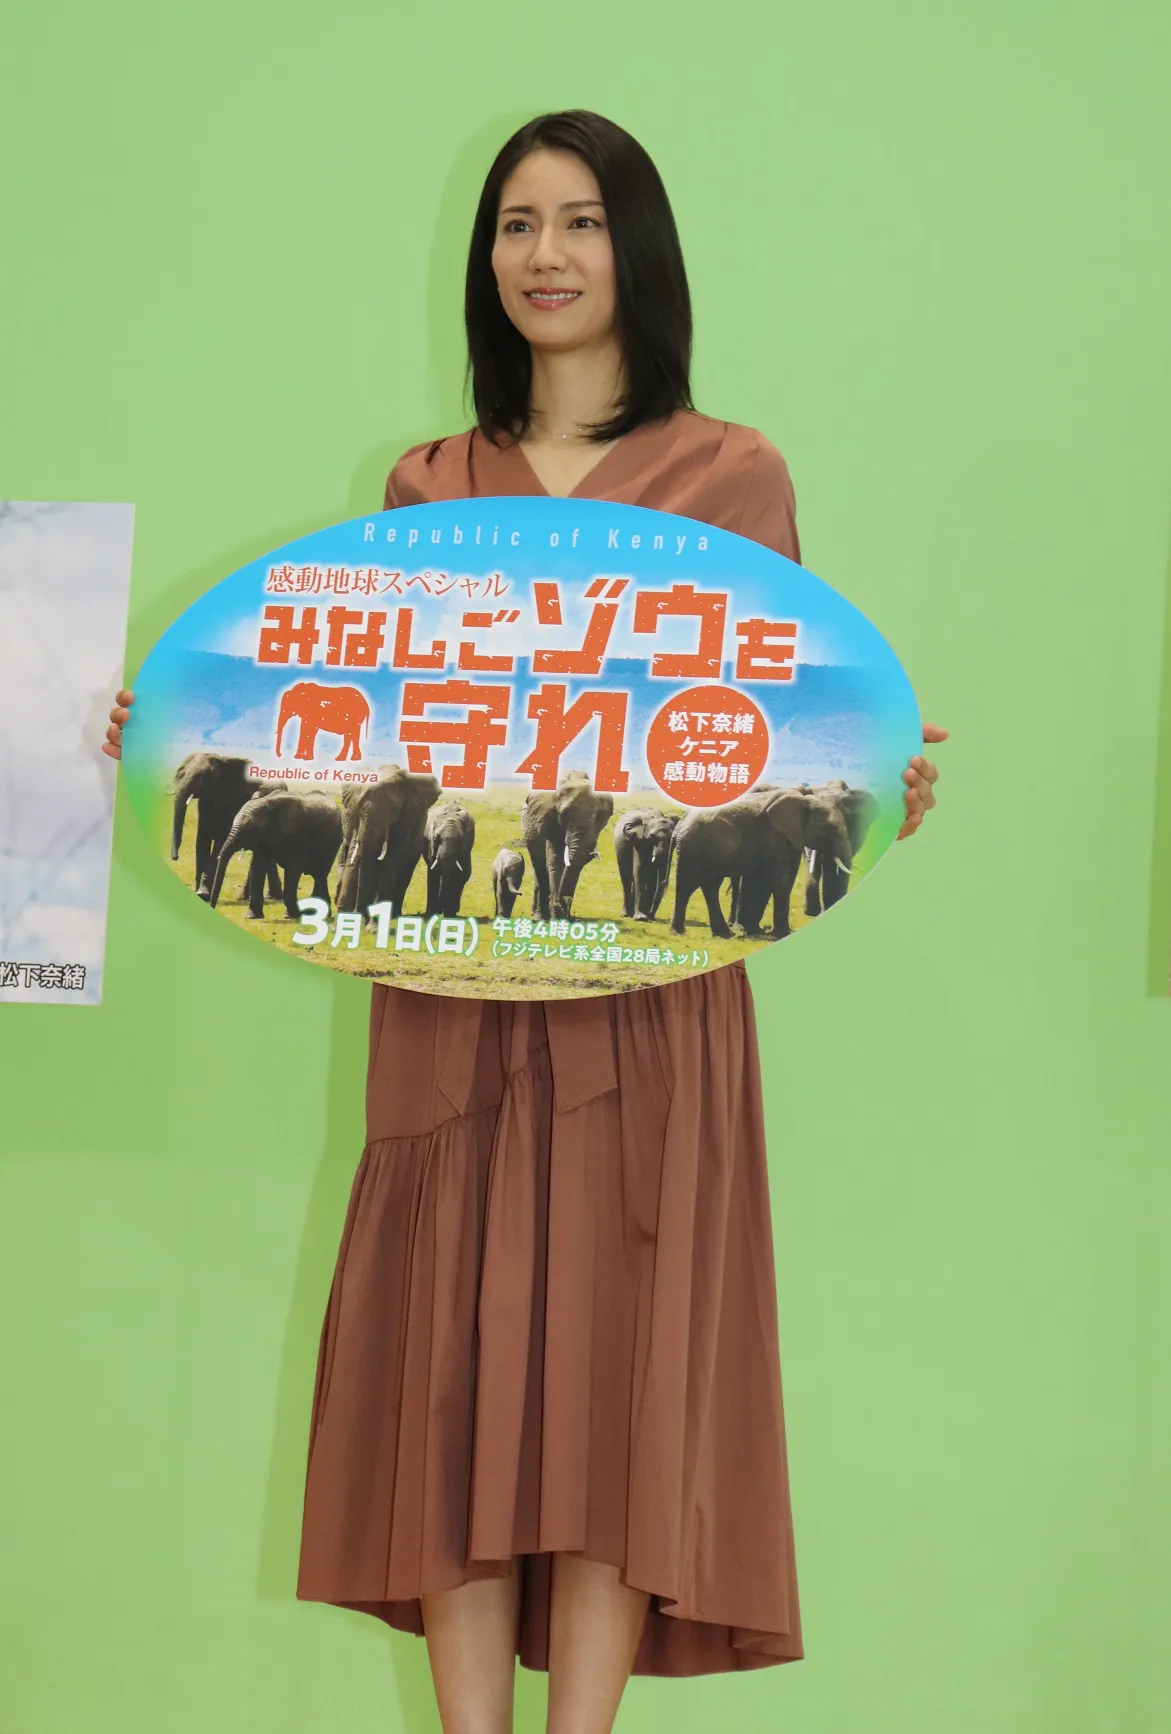 「みなしごゾウを守れ 松下奈緒ケニア感動物語」の会見に出席した松下奈緒